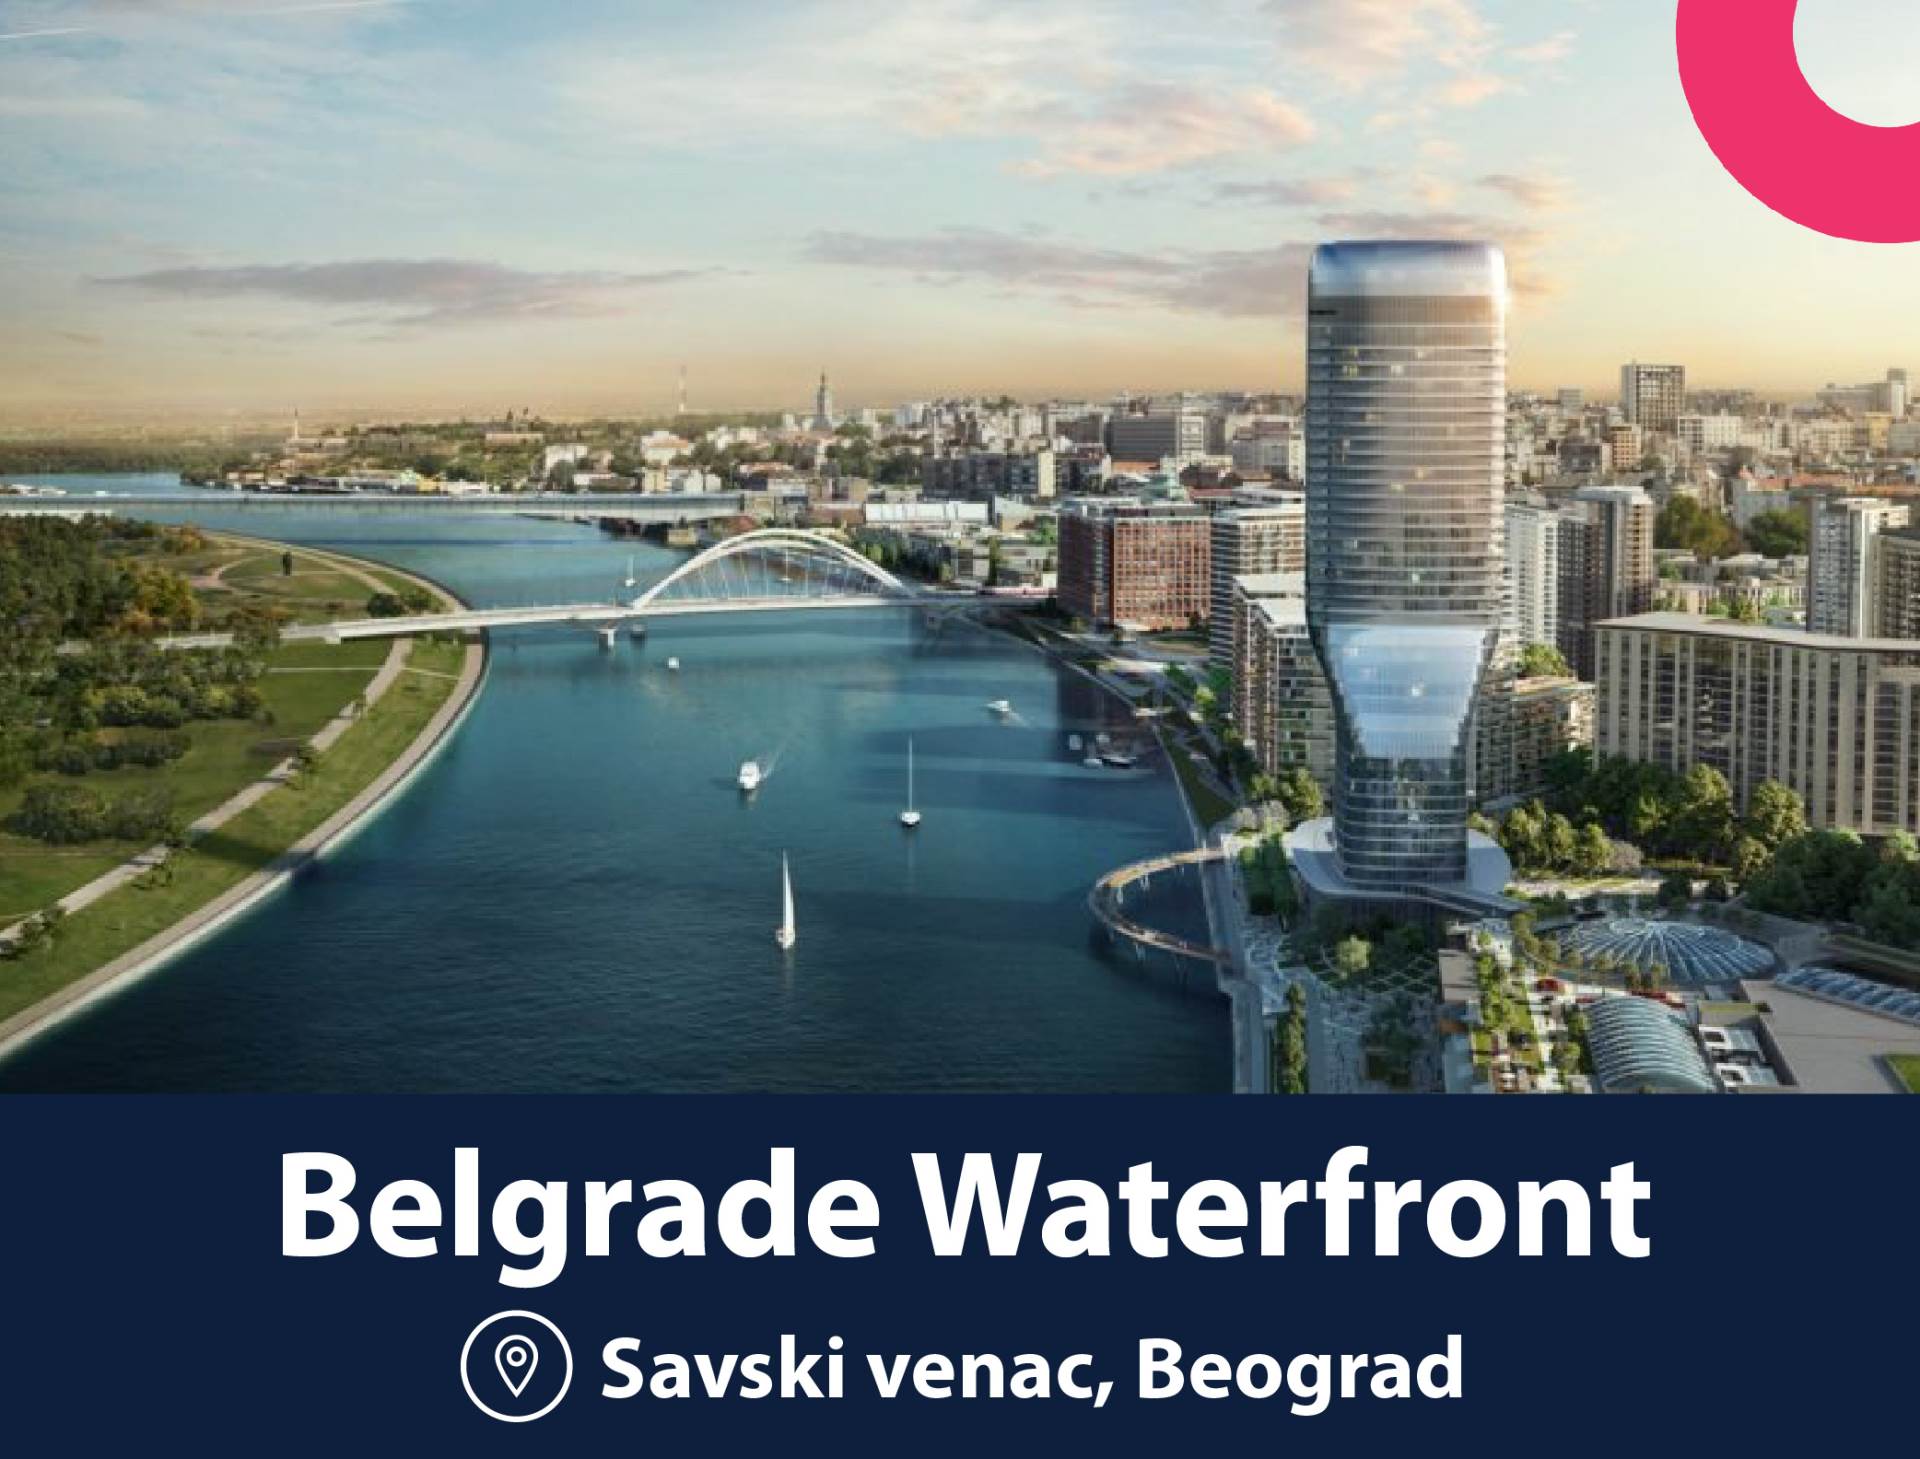 Beograd na vodi - poster image.jpg